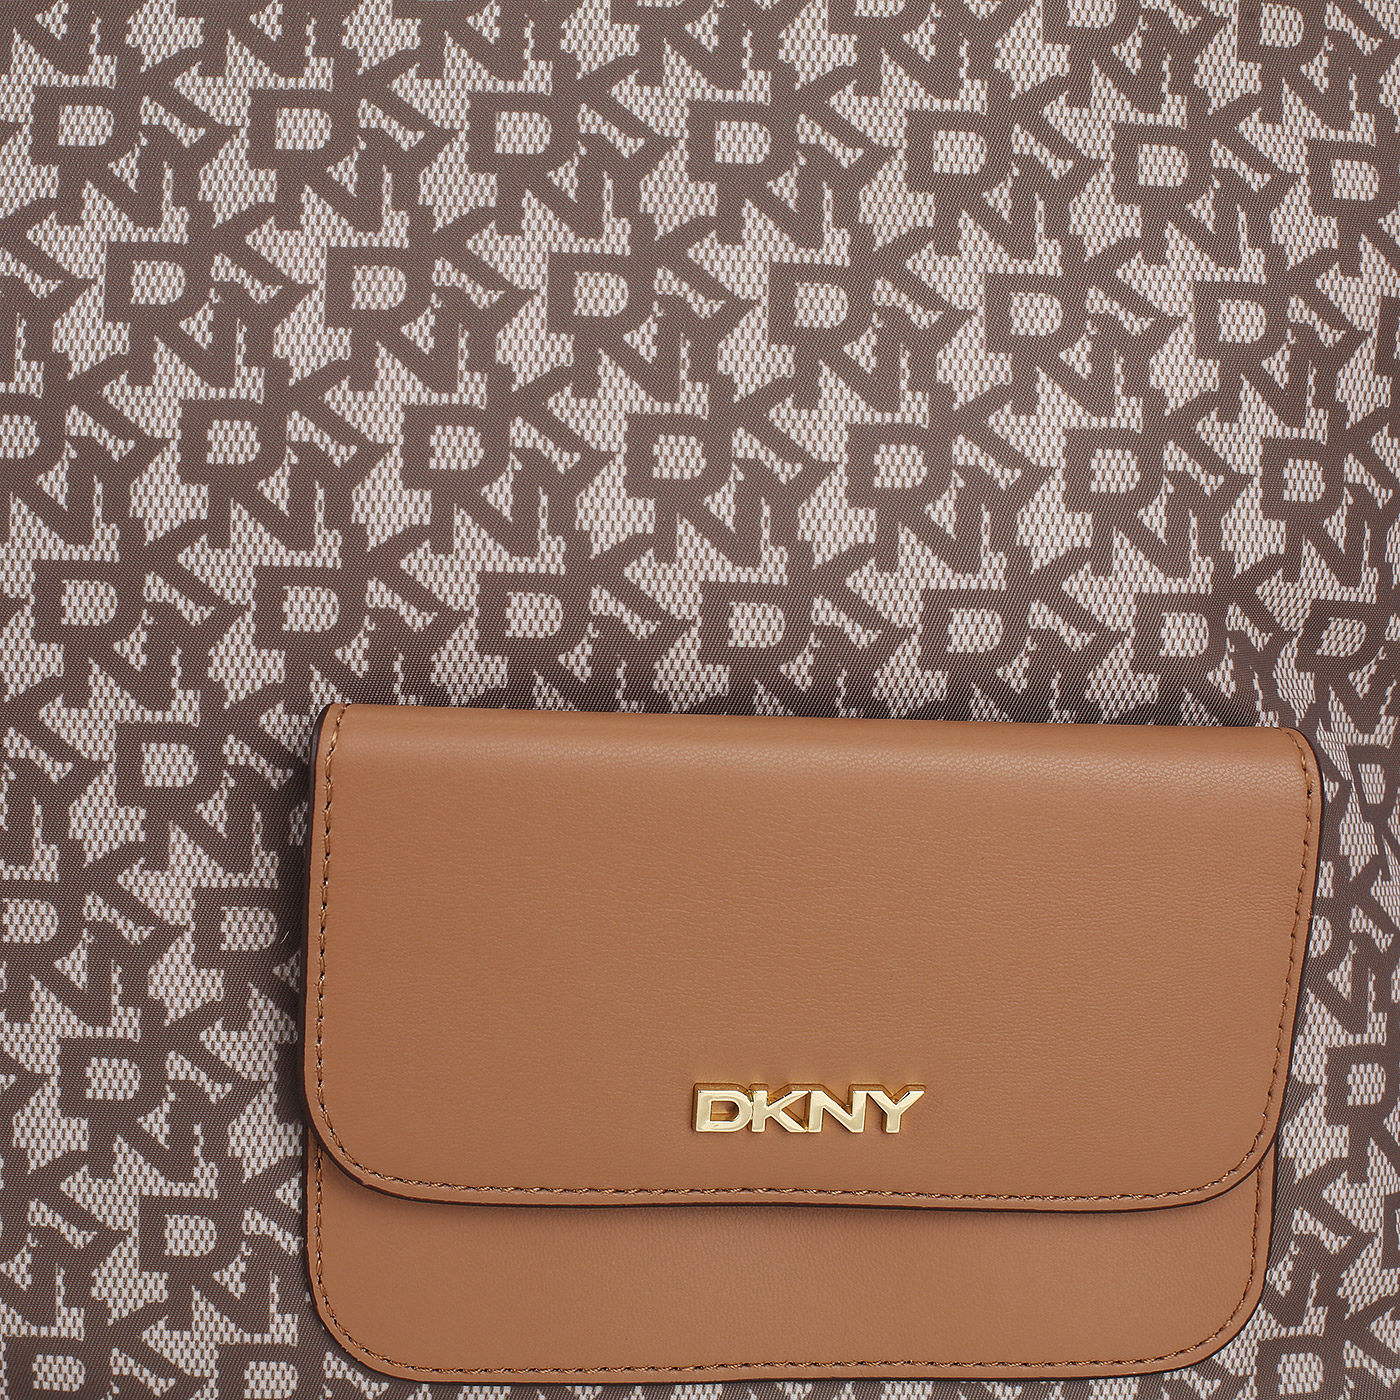 Дорожная сумка DKNY Livvy